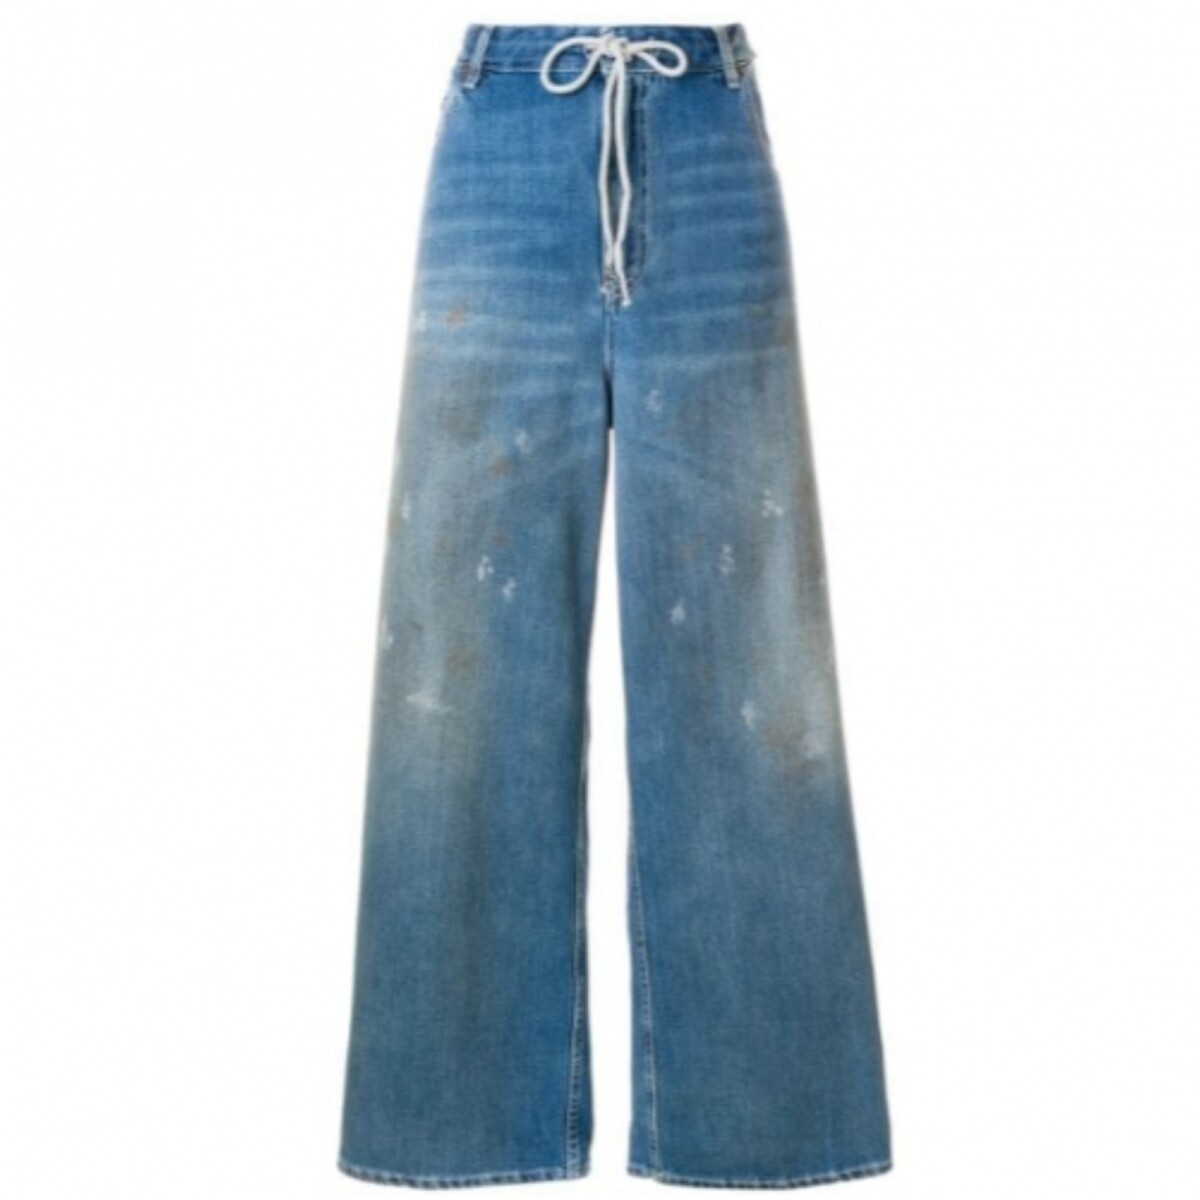 Foto: Na Zara, a calça jeans cargo pode ser achada tanto na cor verde  quanto na preta (bem utilitário), por R$299. - Purepeople